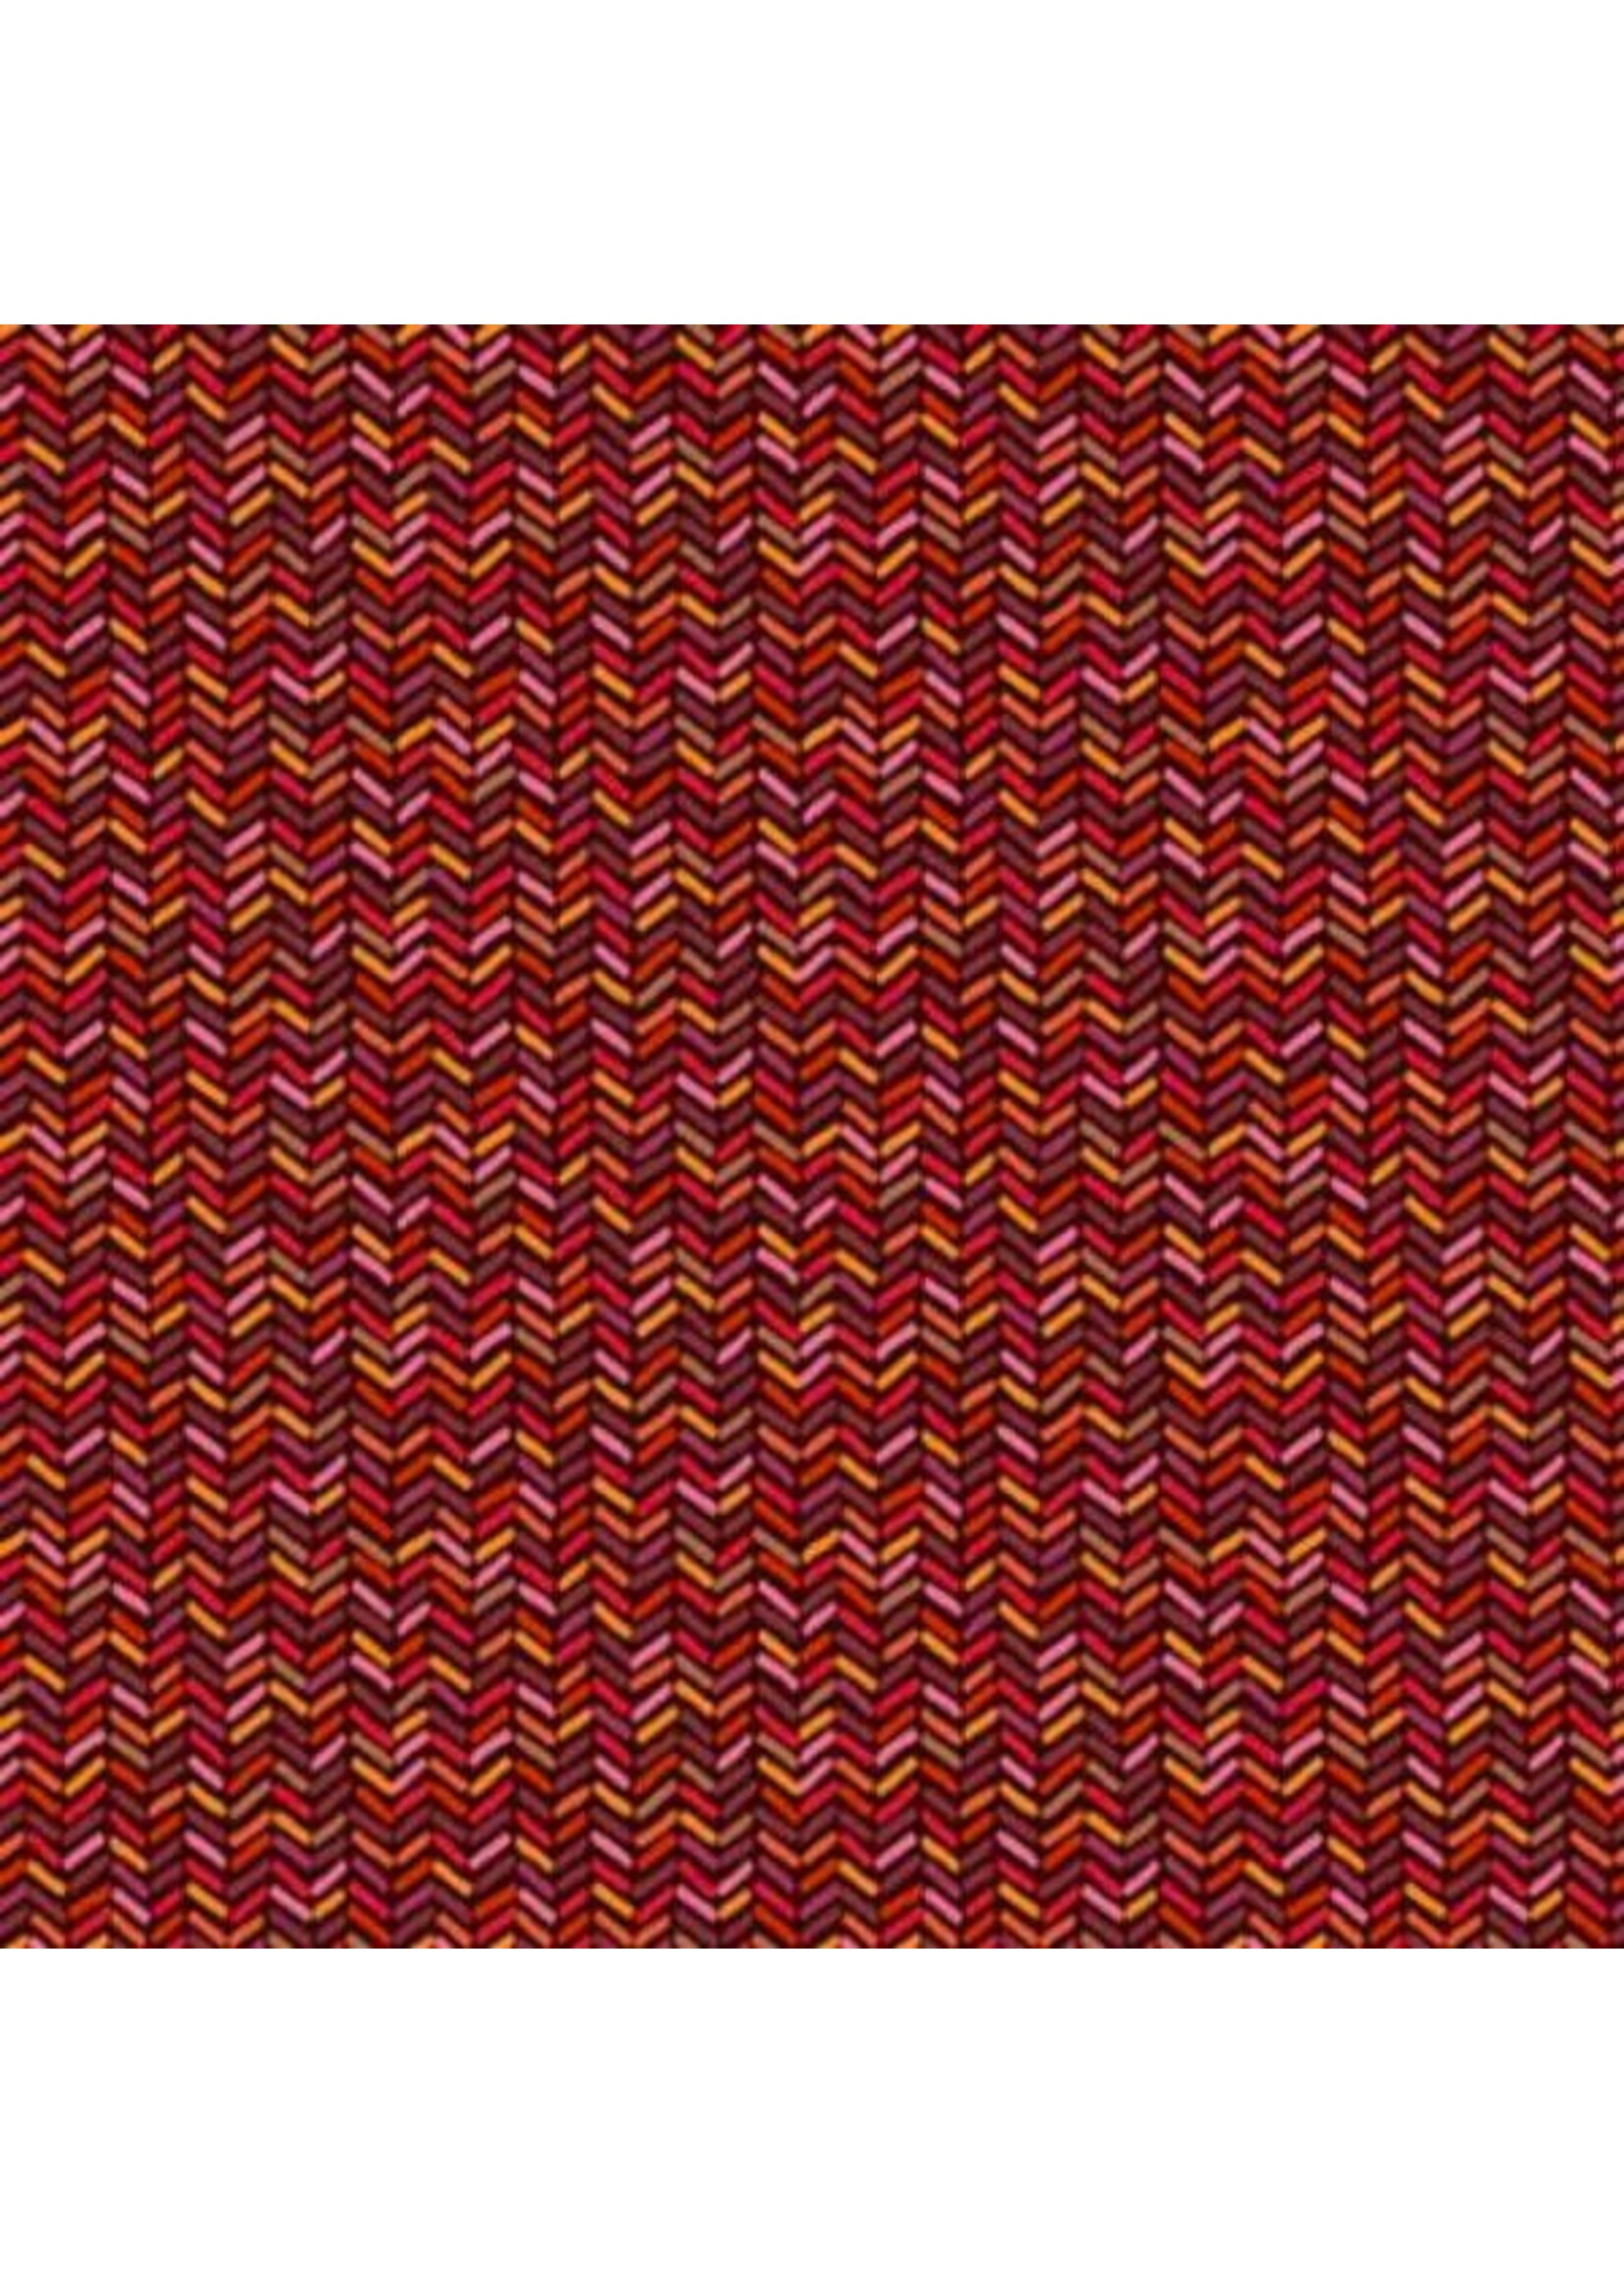 Makower Autumn Days - Herringbone -Red - 2598R